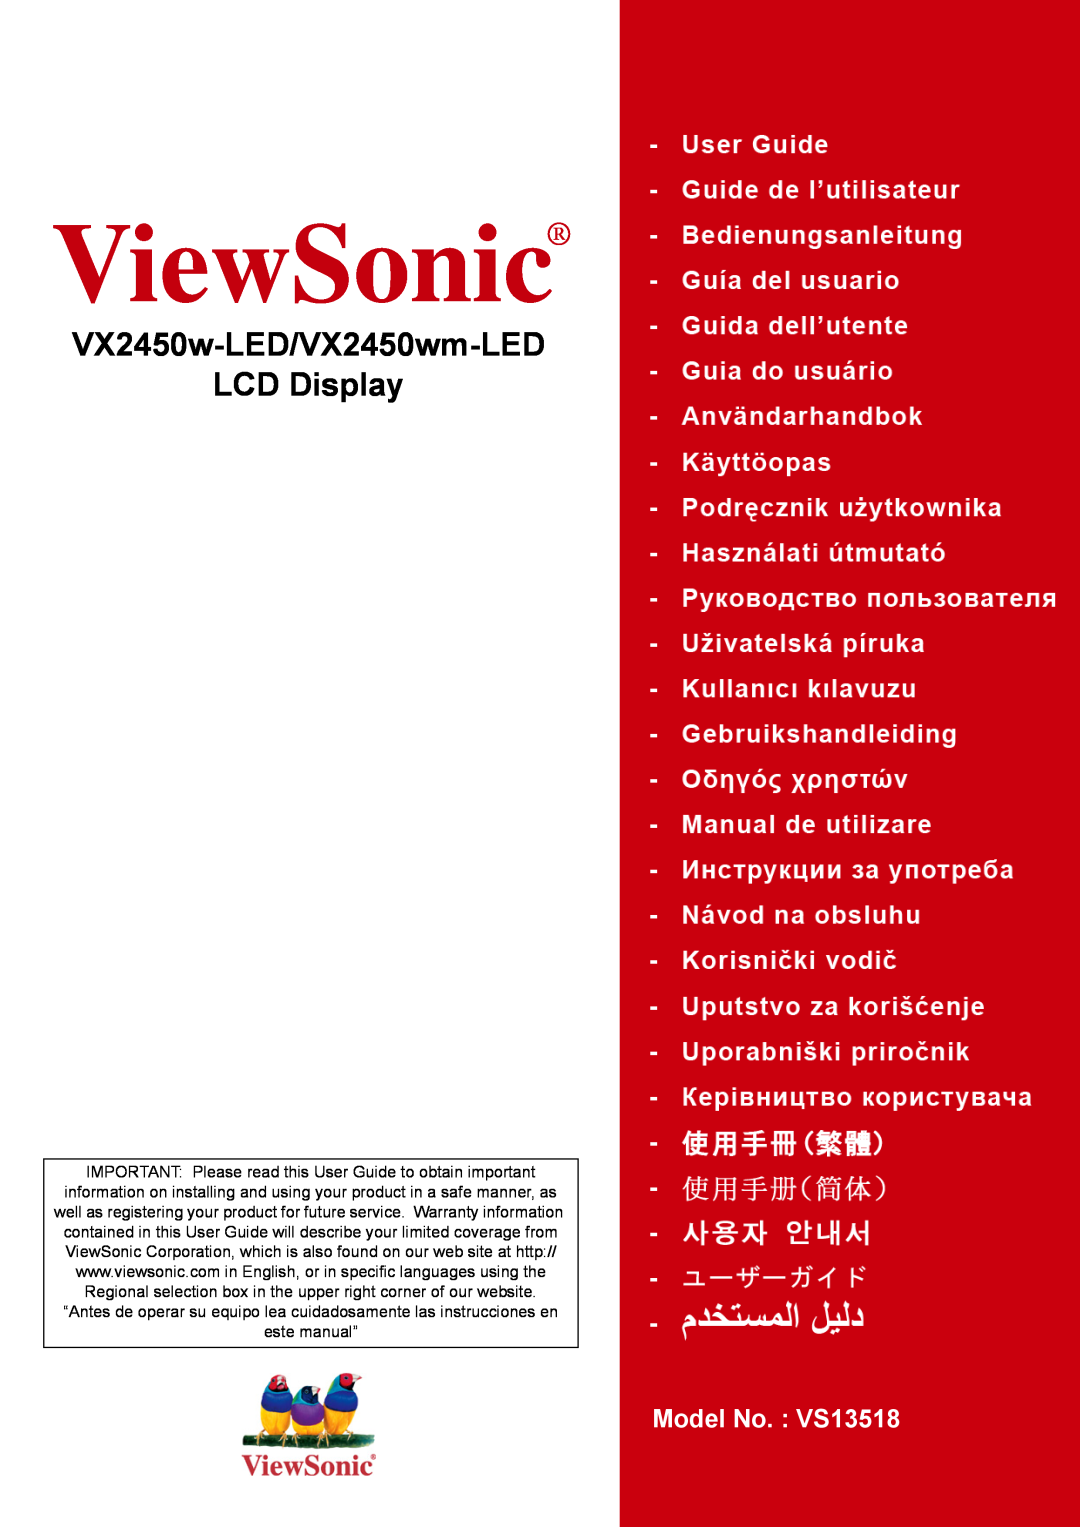 ViewSonic warranty VX2450w-LED/VX2450wm-LED LCD Display, ViewSonic, Model No. VS13518 